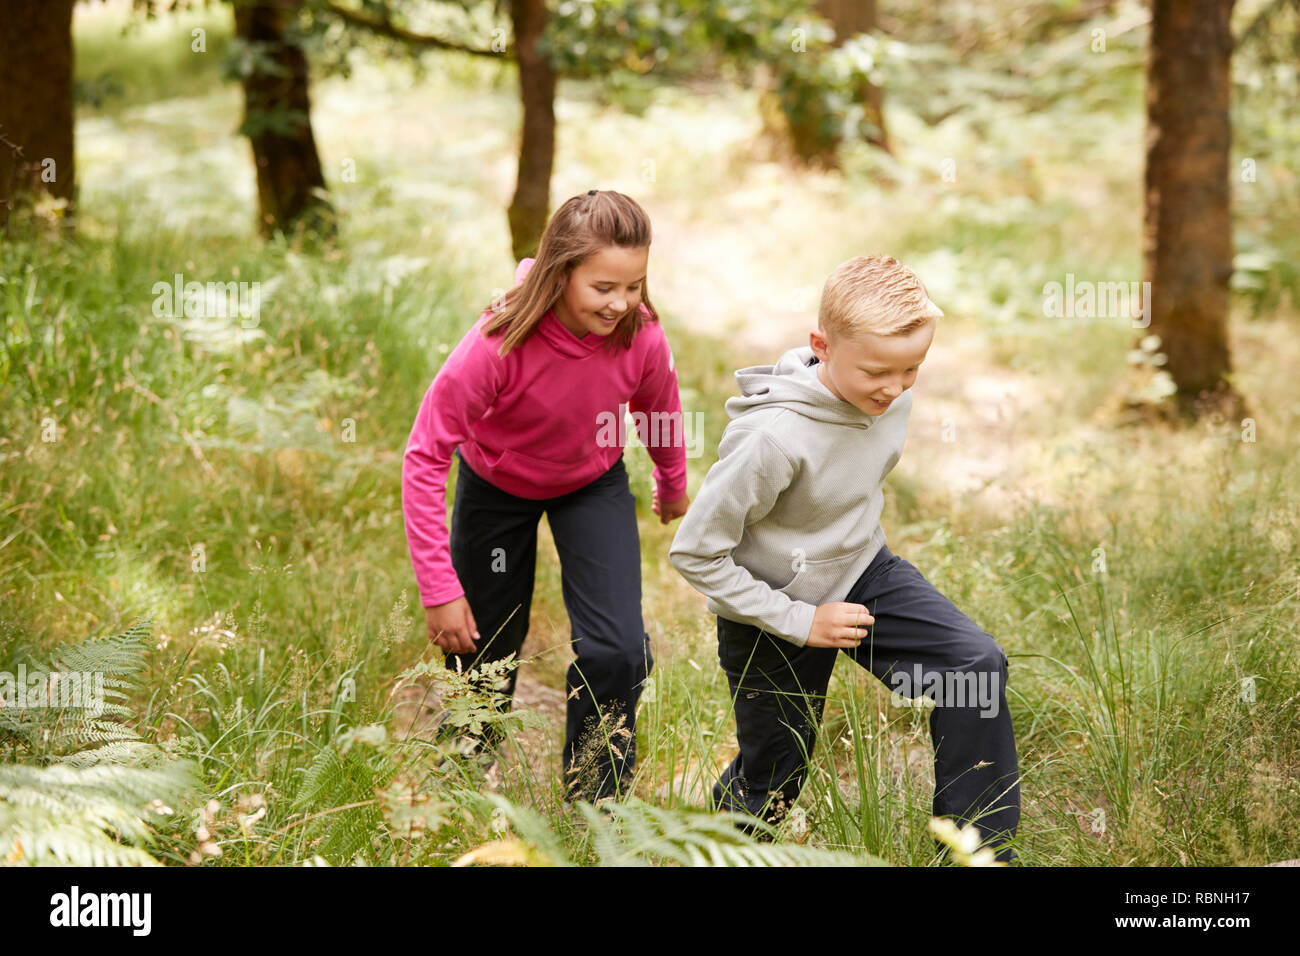 Deux enfants à marcher ensemble dans une forêt au milieu de la verdure, trois quarts, side view Banque D'Images